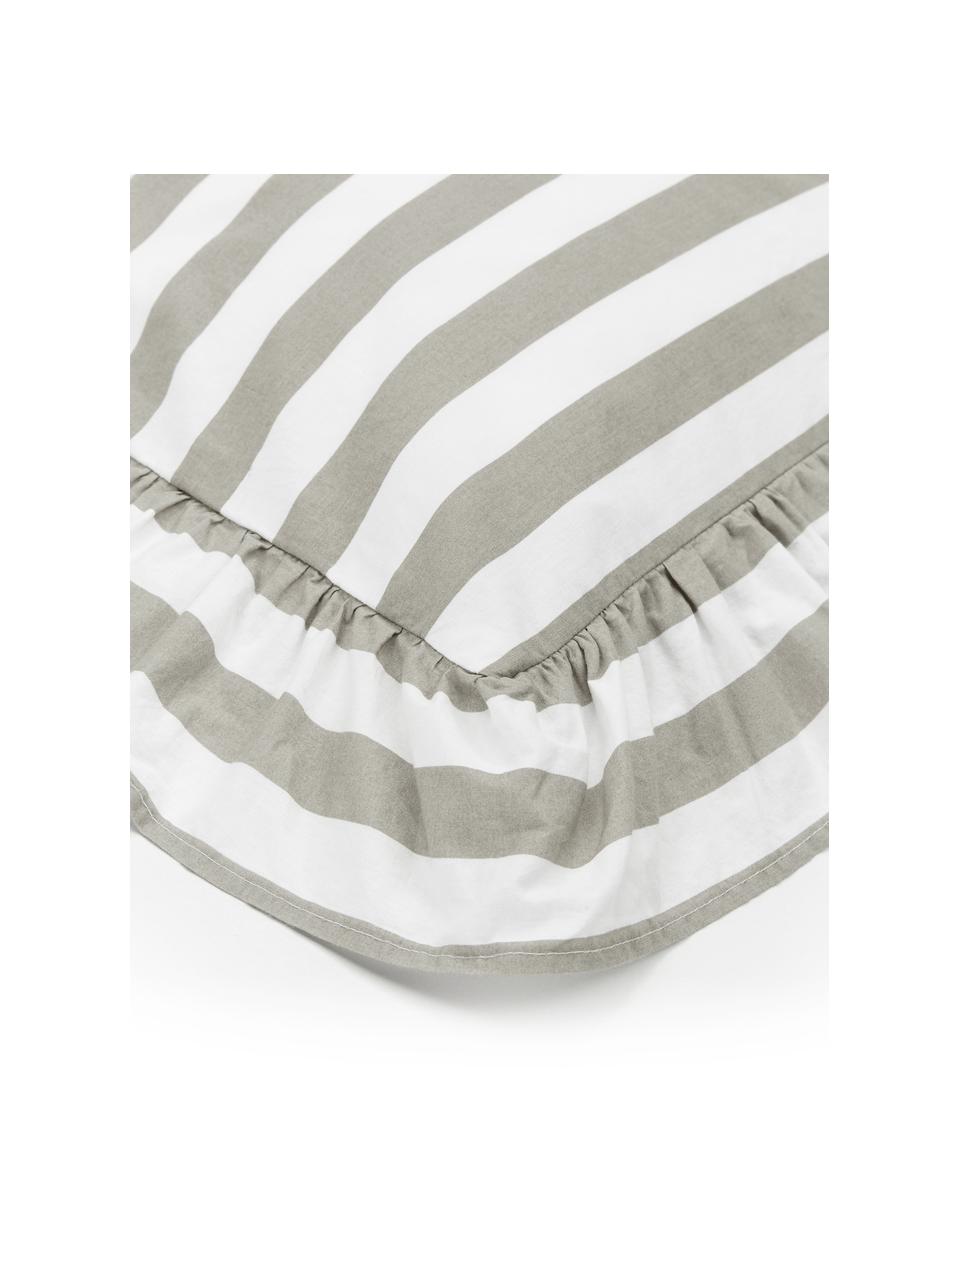 Pościel z bawełny z efektem sprania Averni, Beżowy, biały, 155 x 220 cm + 1 poduszka 80 x 80 cm